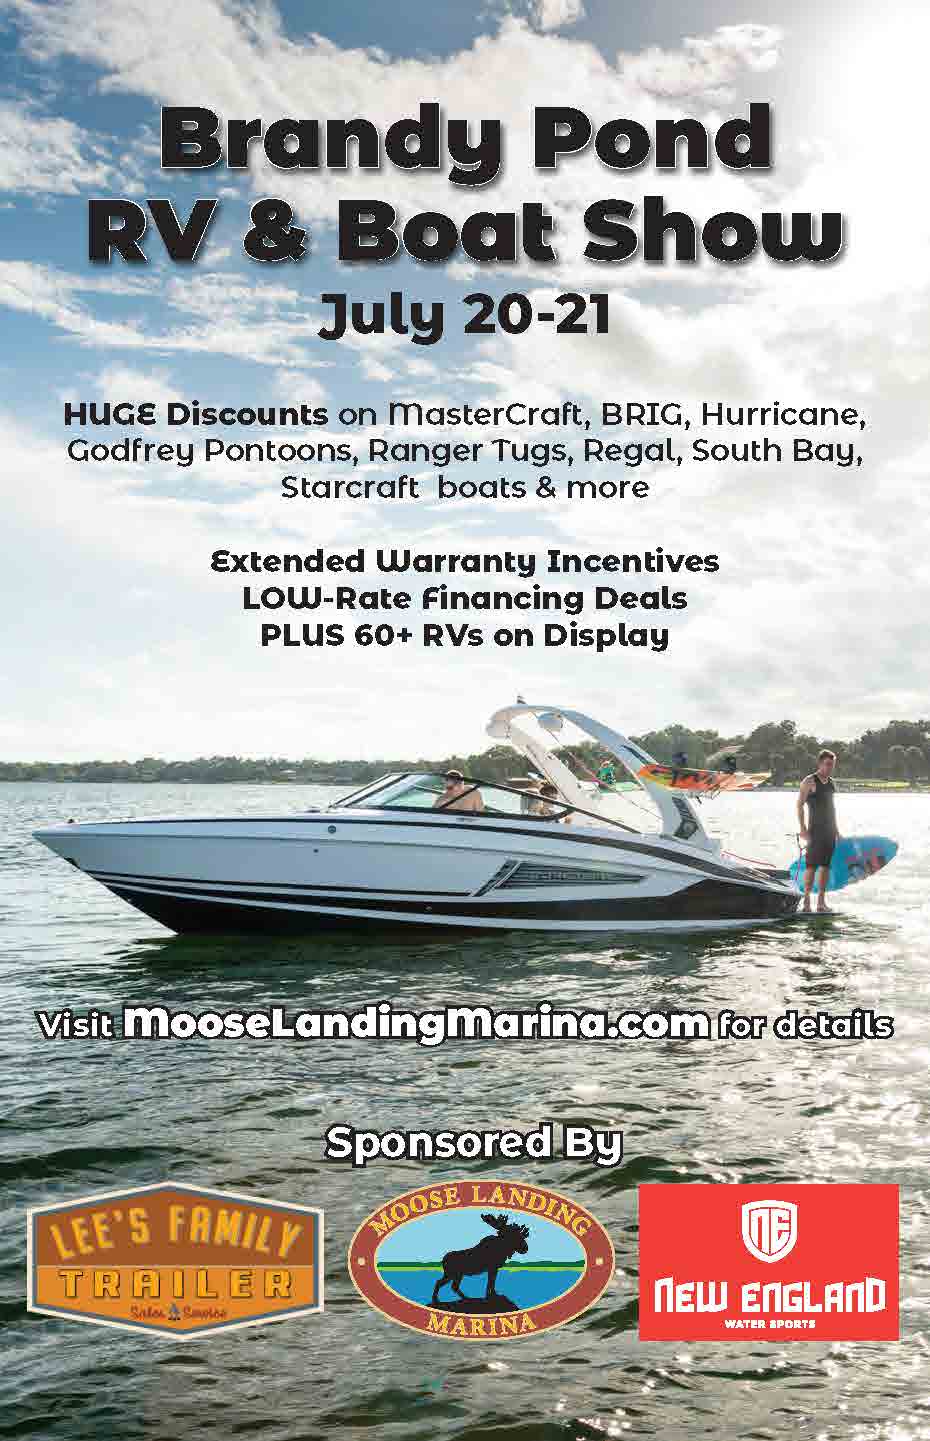 https://www.eventbrite.com/e/brandy-pond-rv-boat-show-tickets-64327875407